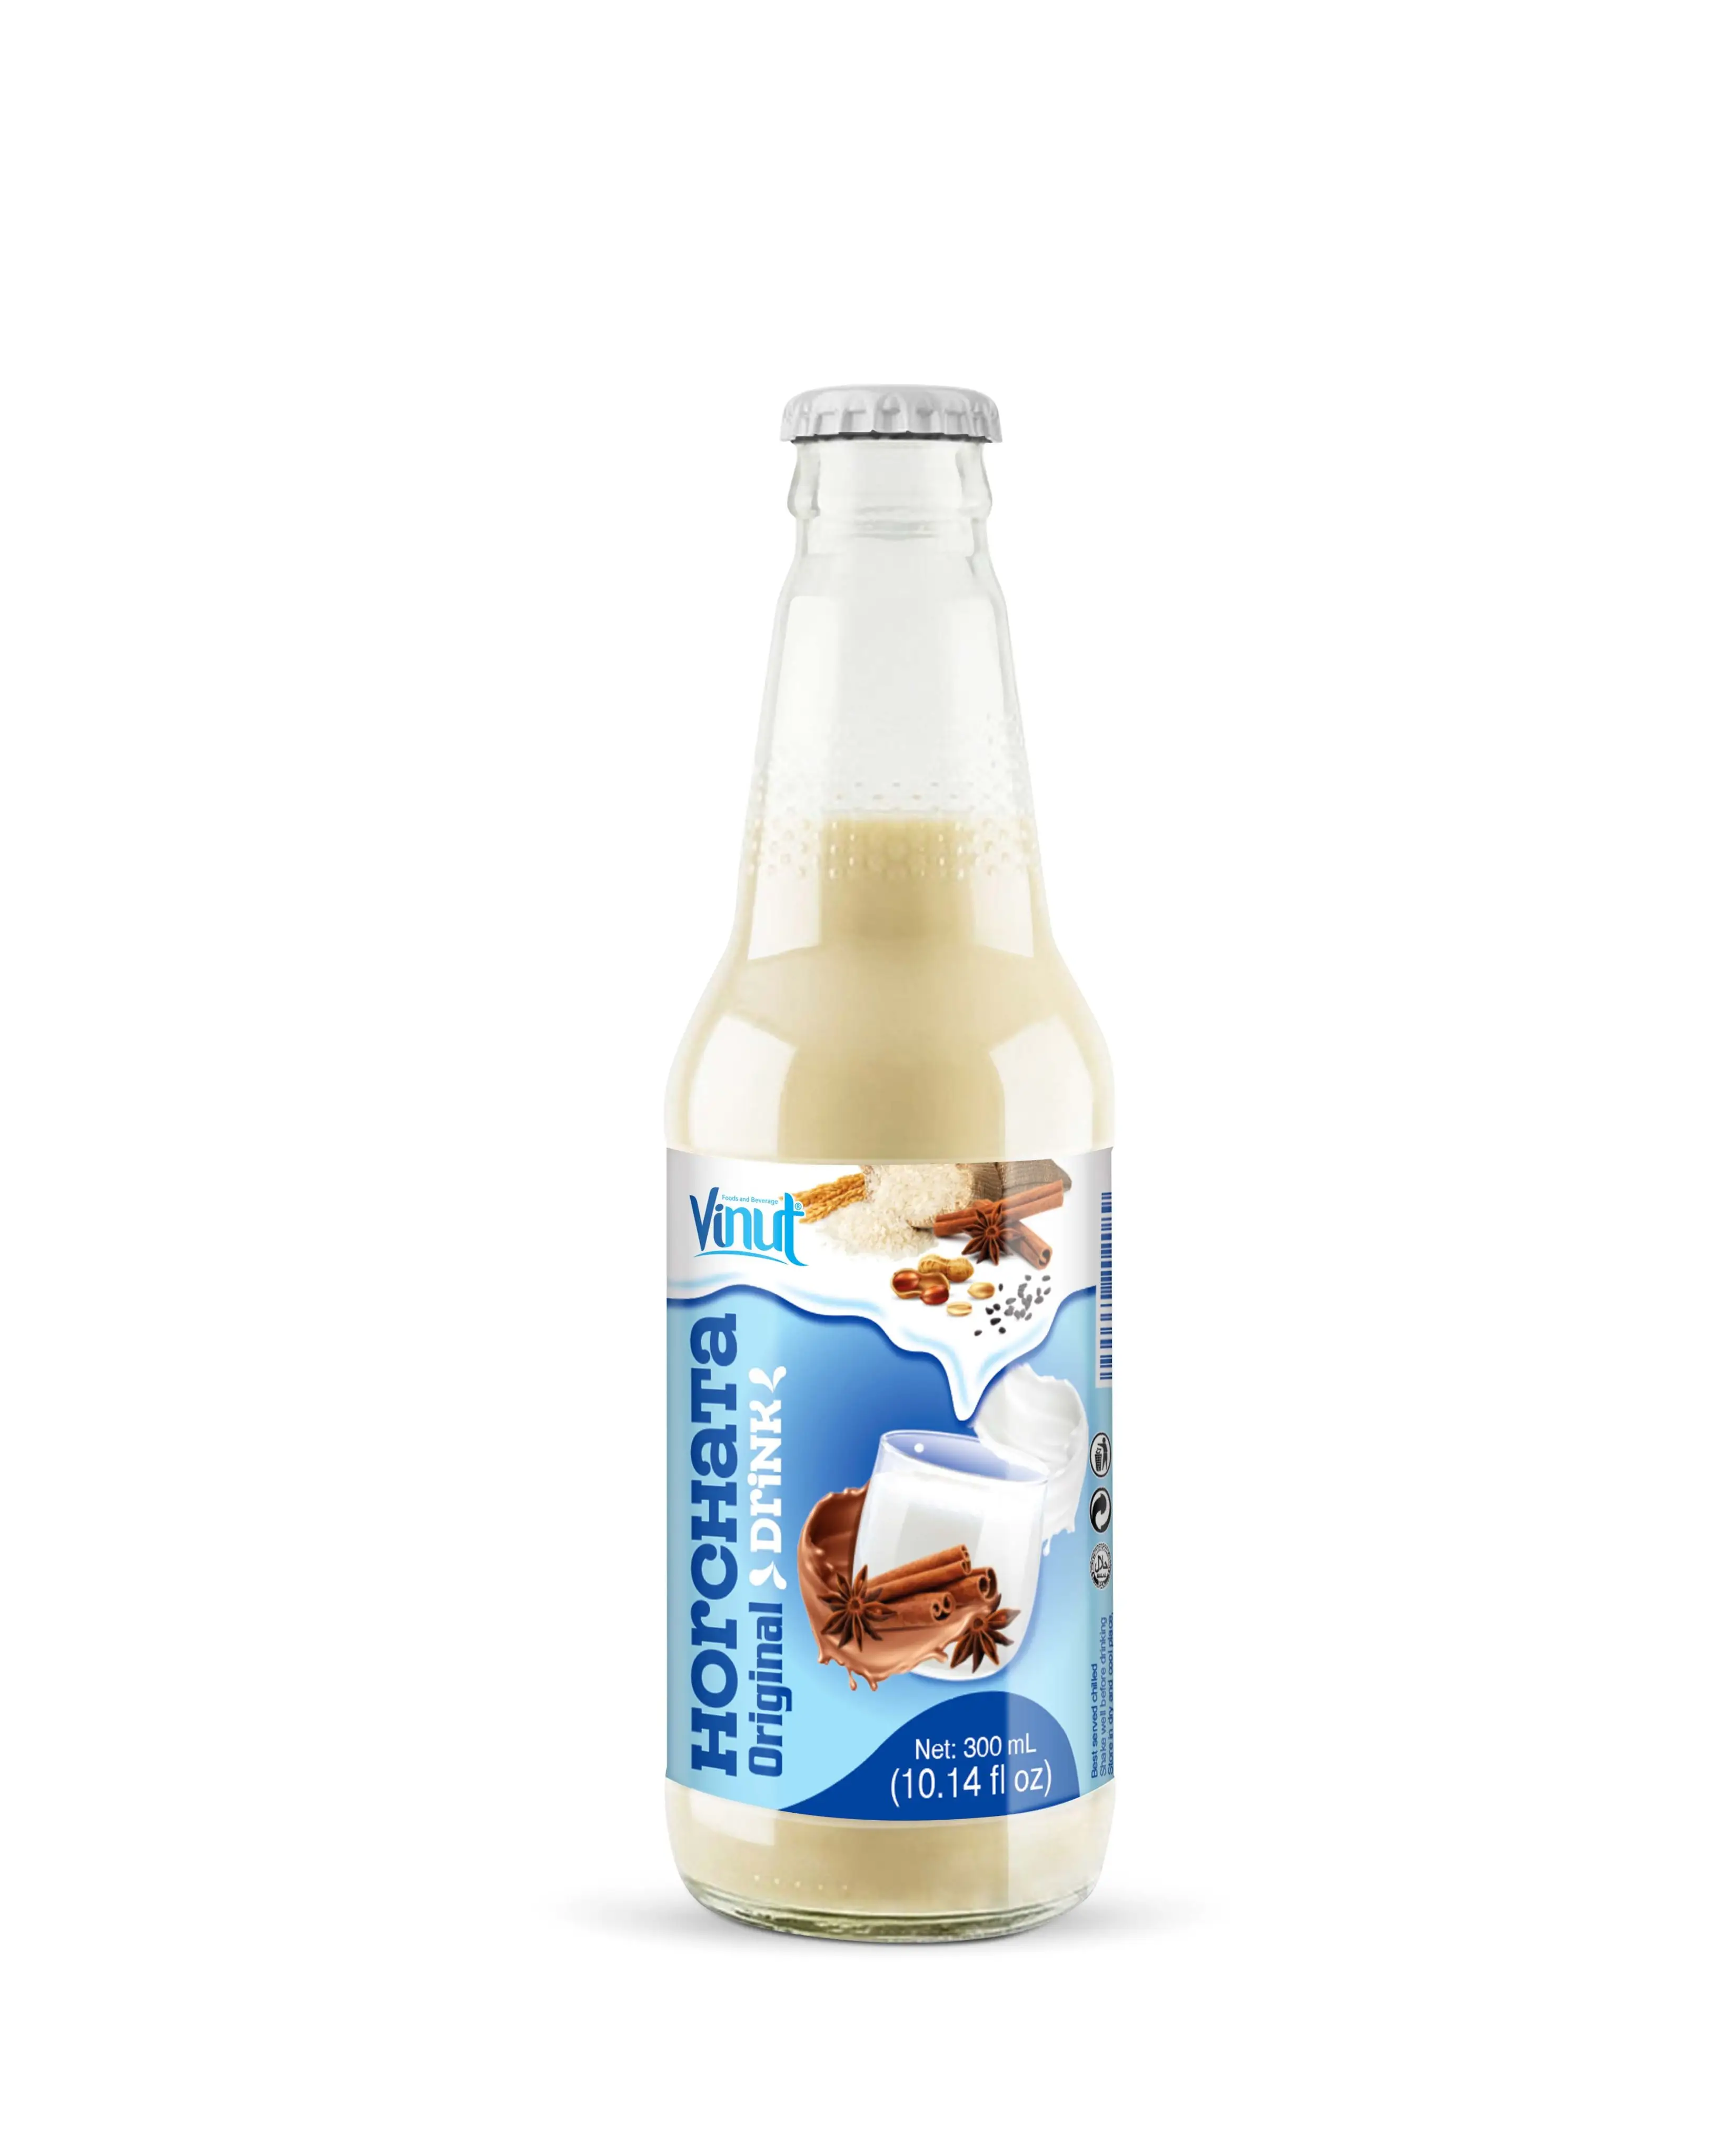 VINUT Horchata-botella de 300ml, Original, exportación y fabricantes